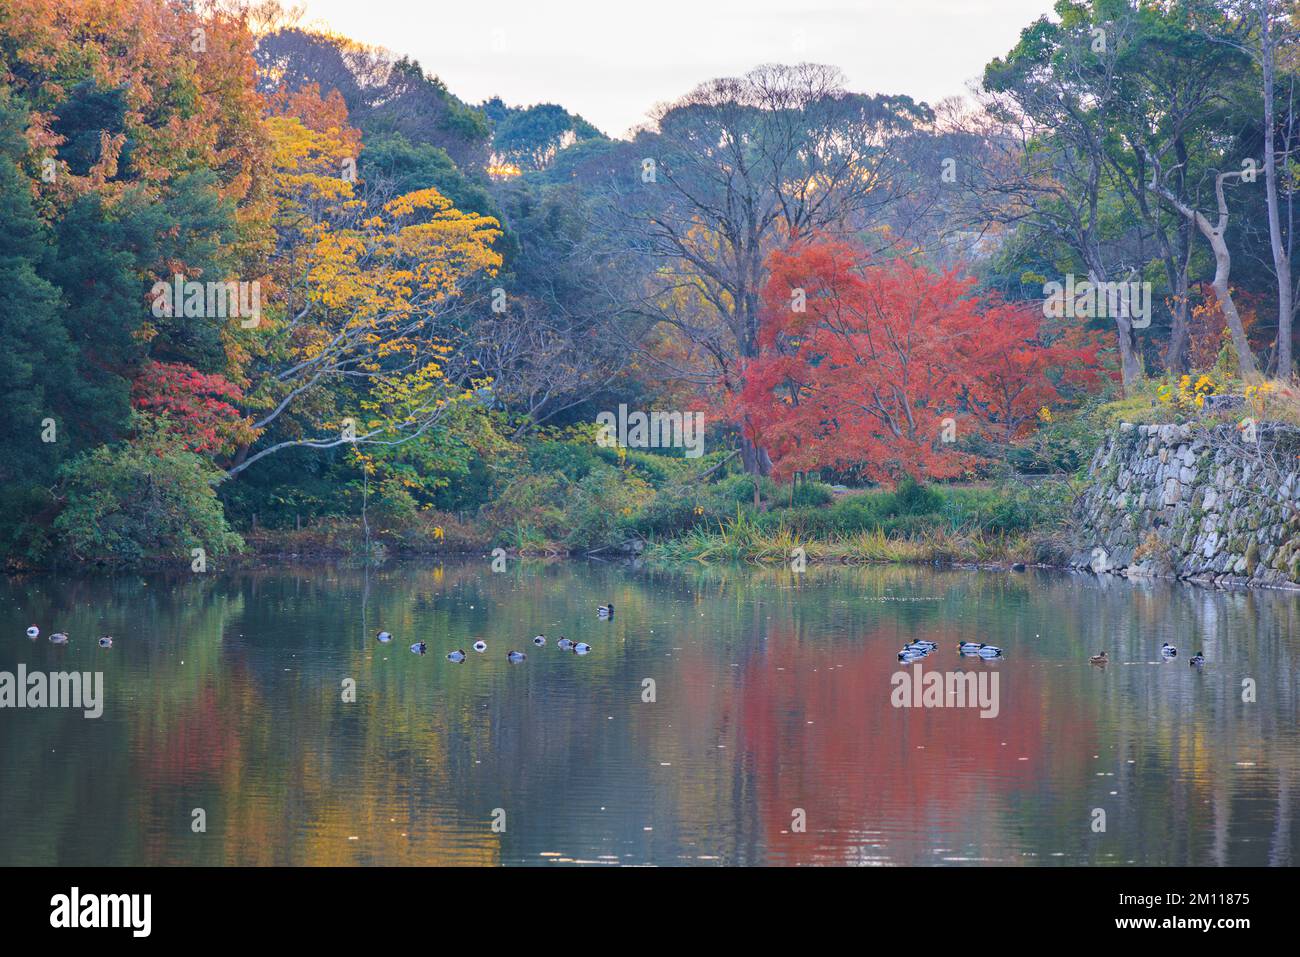 Los patos flotan en un estanque tranquilo junto a los árboles en todo color de otoño Foto de stock